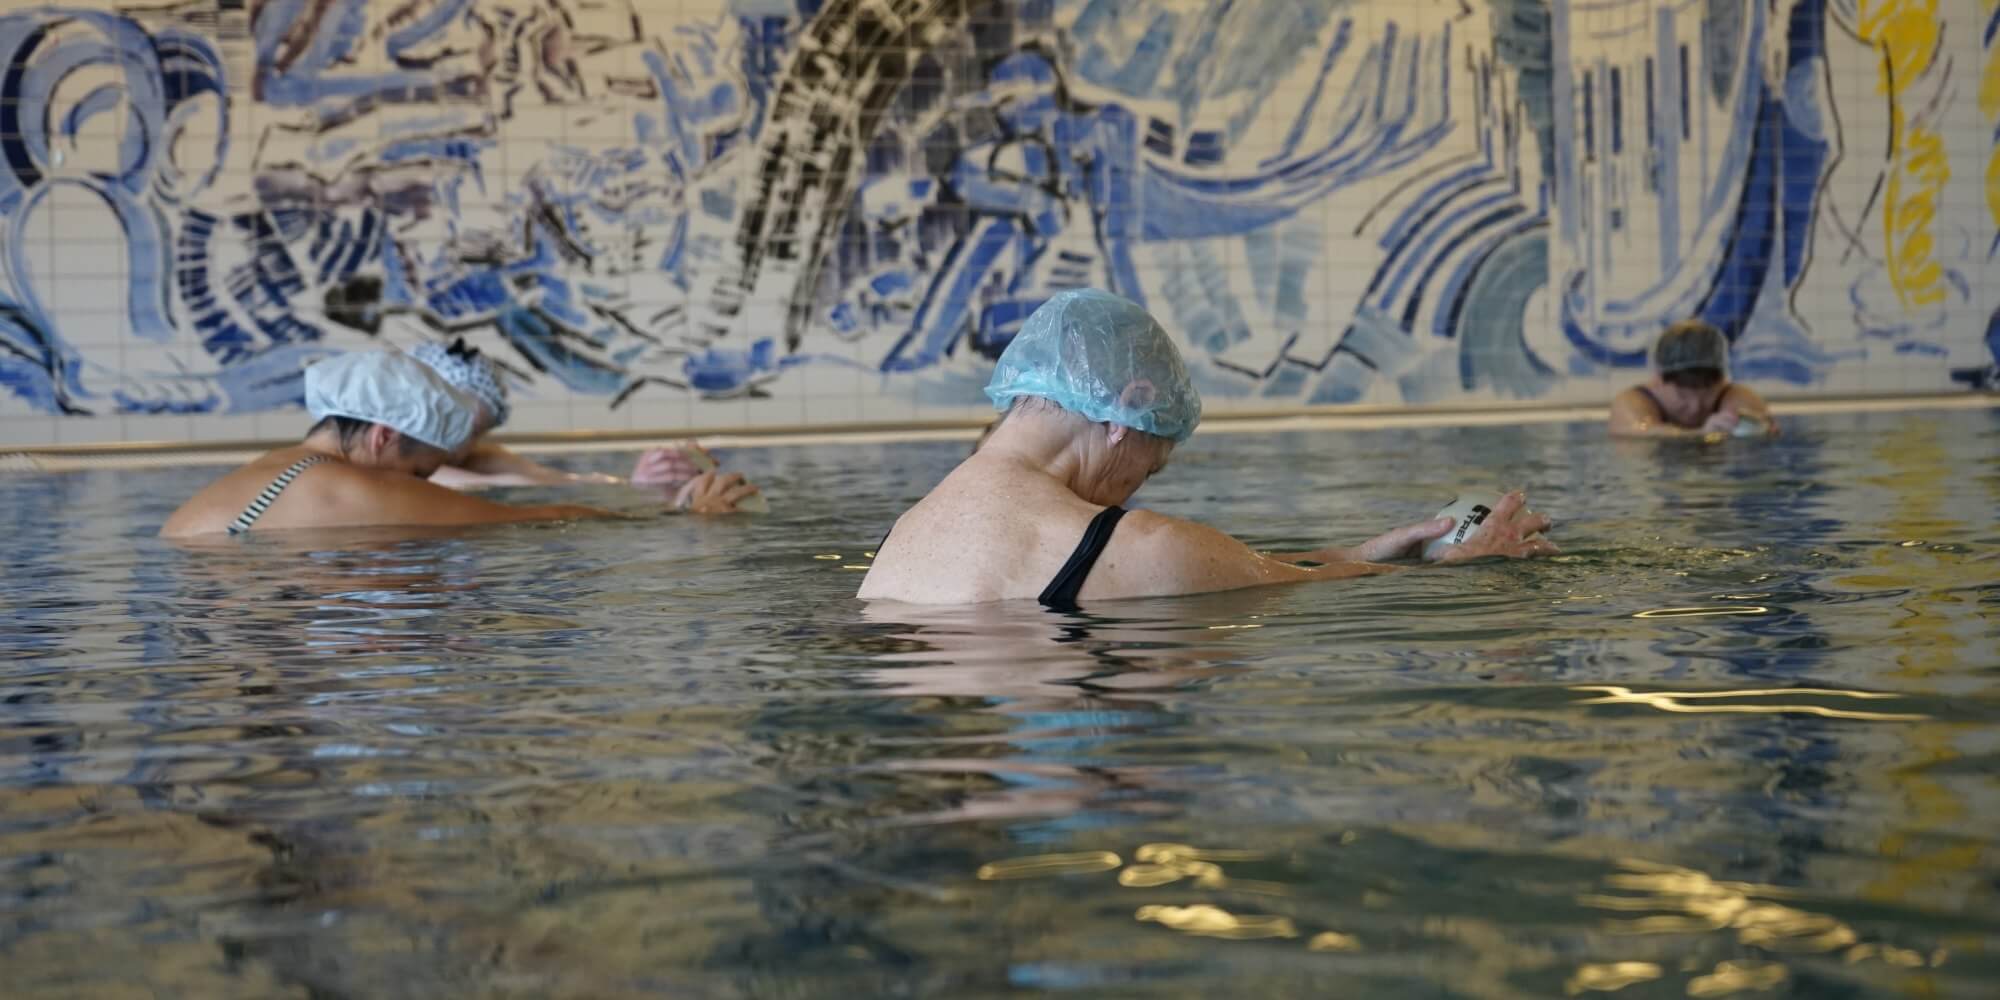 Træning i varmt vand for ryg, skuldre og nakke | FOF Københavns Omegn